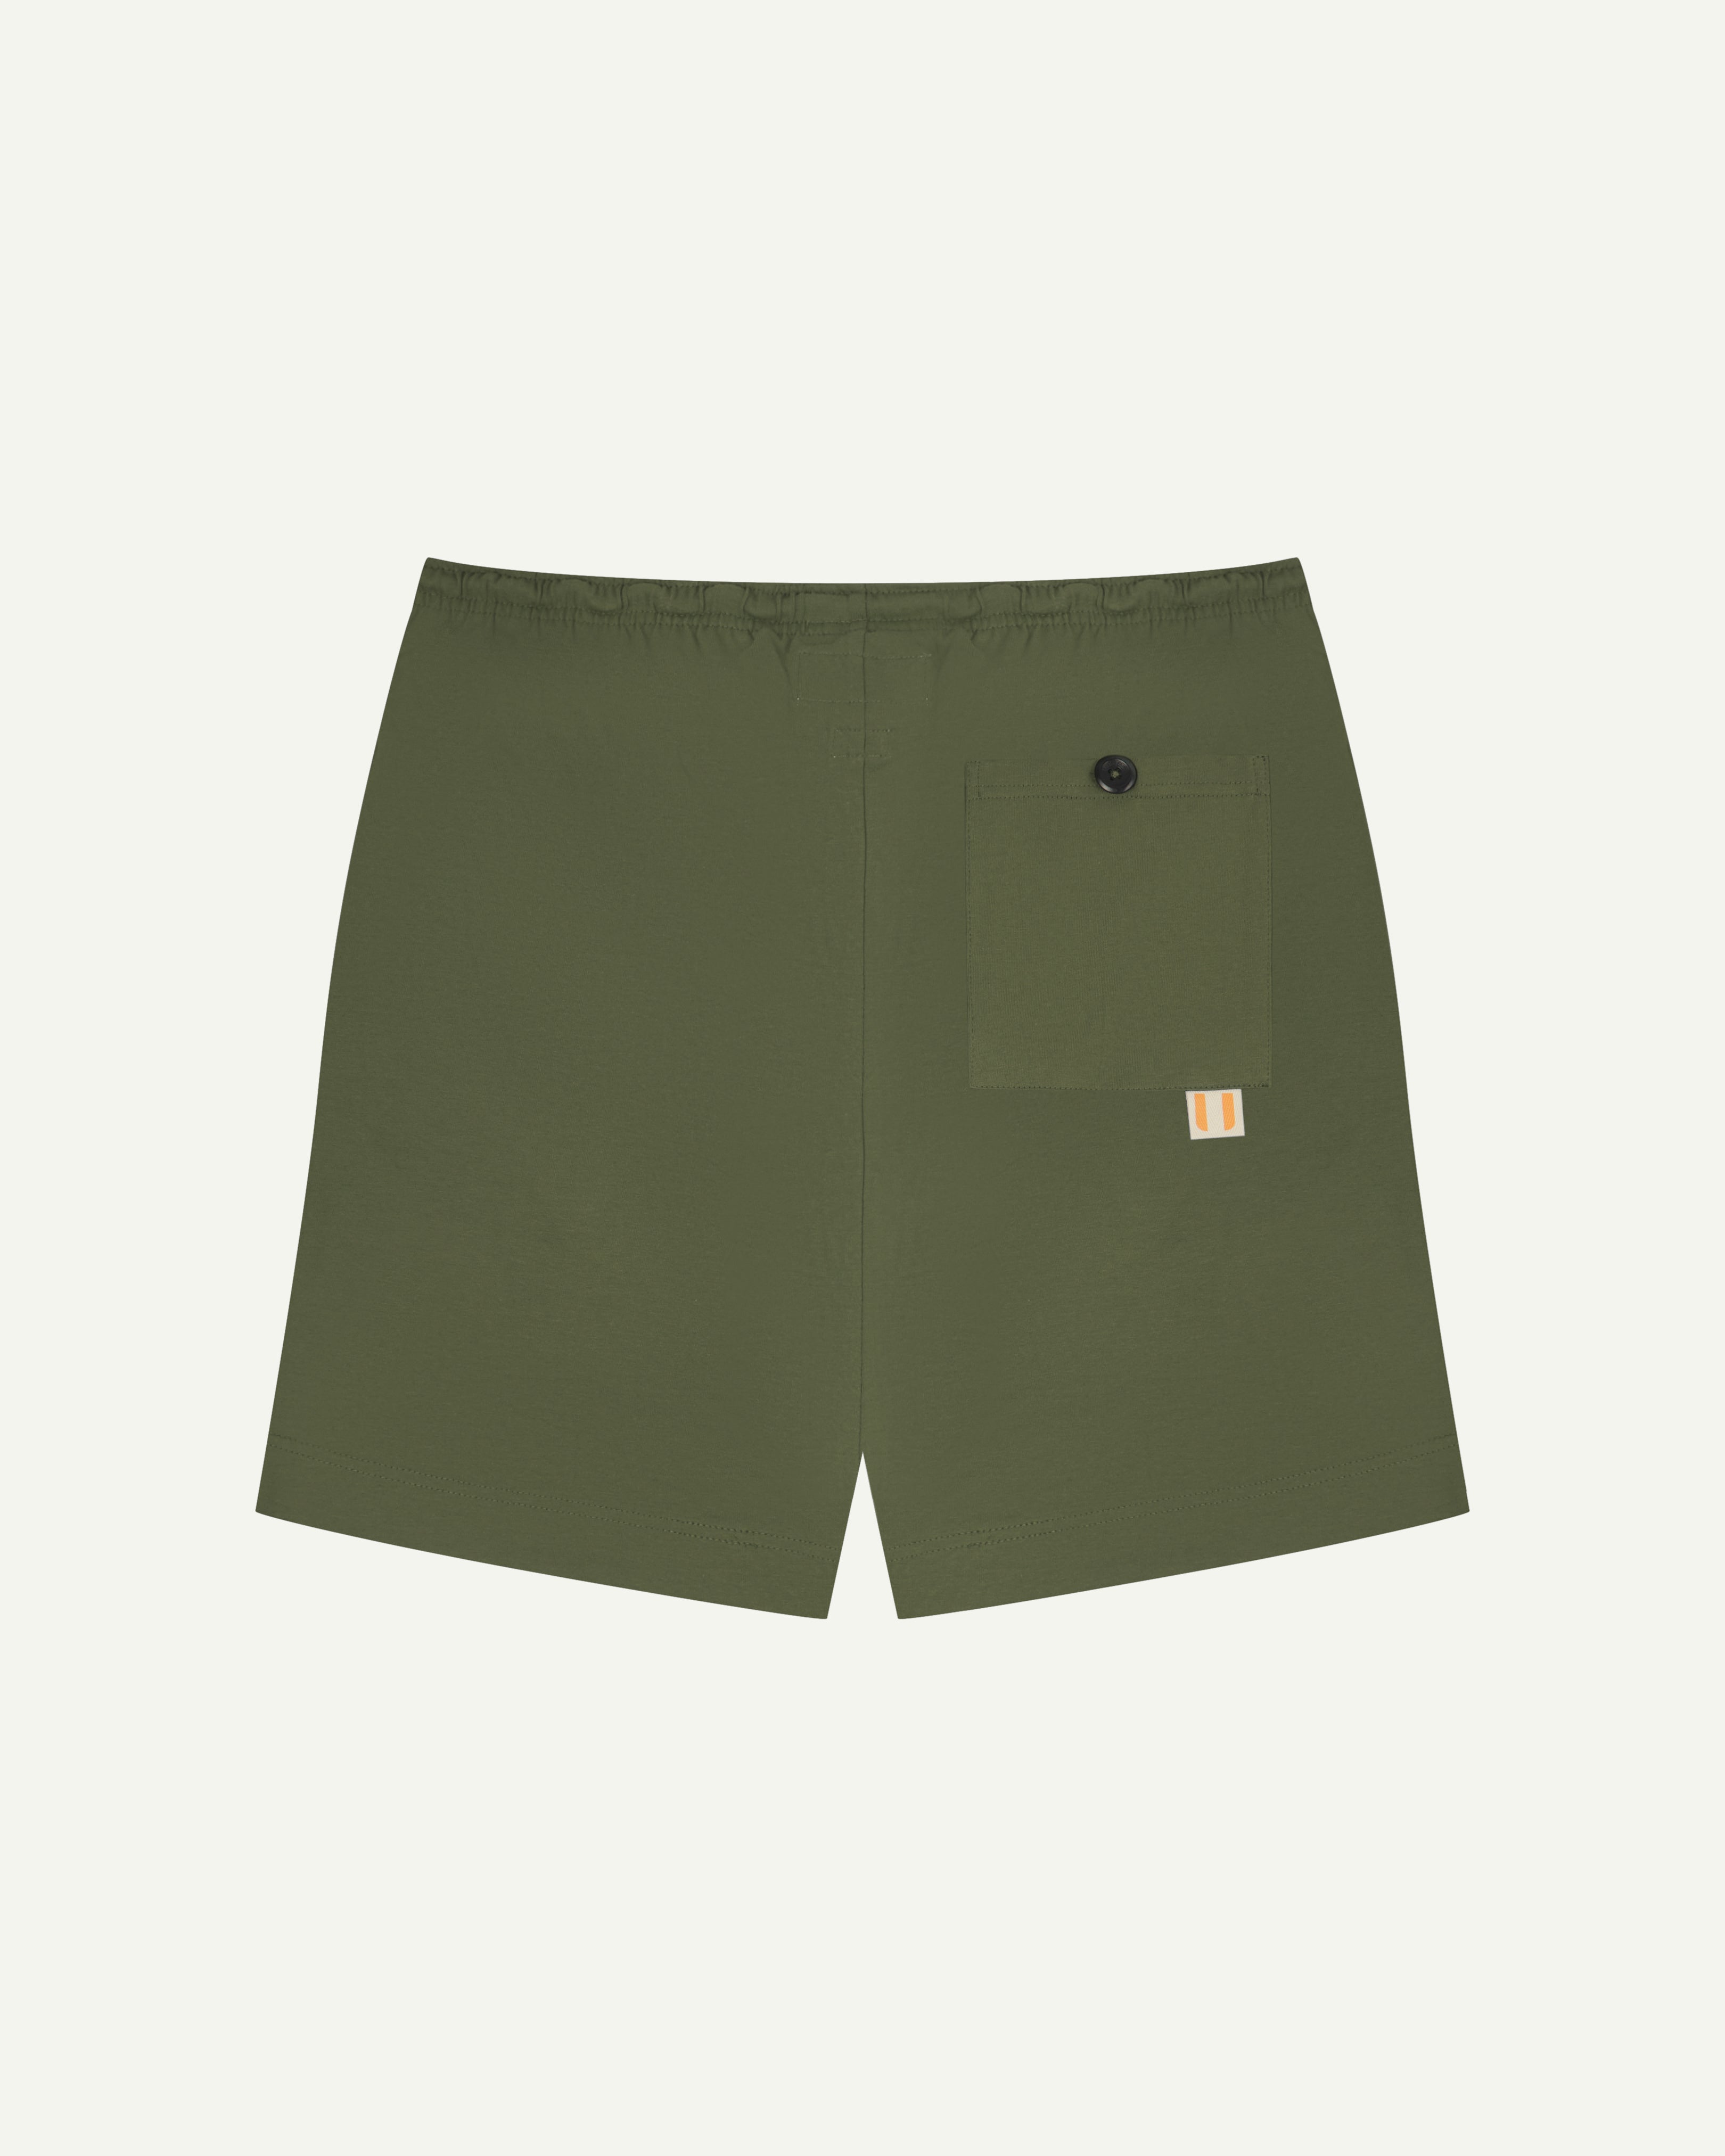 7007 Army Green Men's Drawstring Shorts